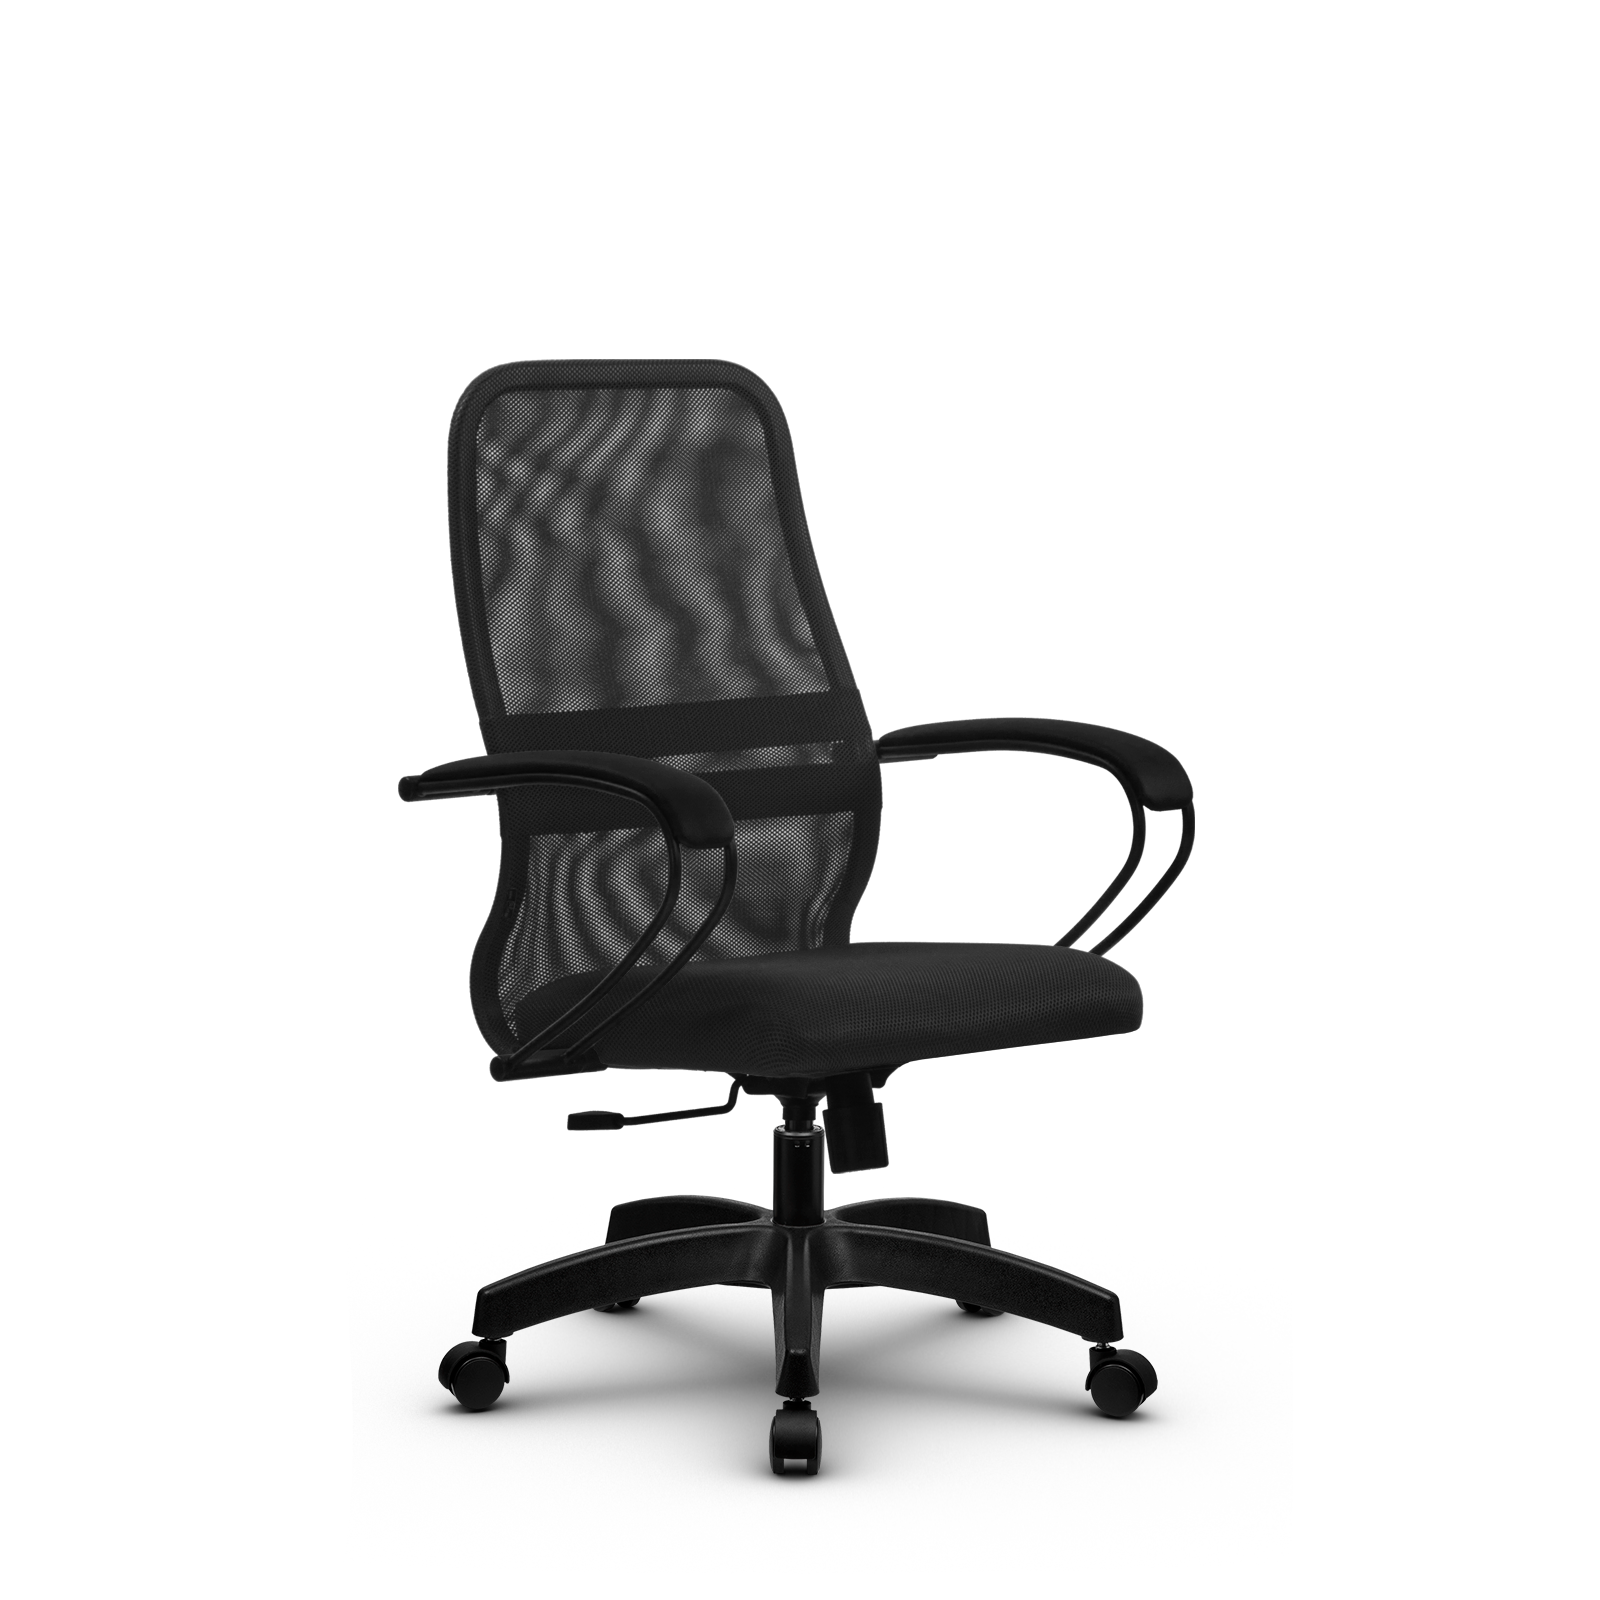 90488598 Офисное кресло Su z312457599 прочный сетчатый материал цвет темно-серый STLM-0248476 МЕТТА